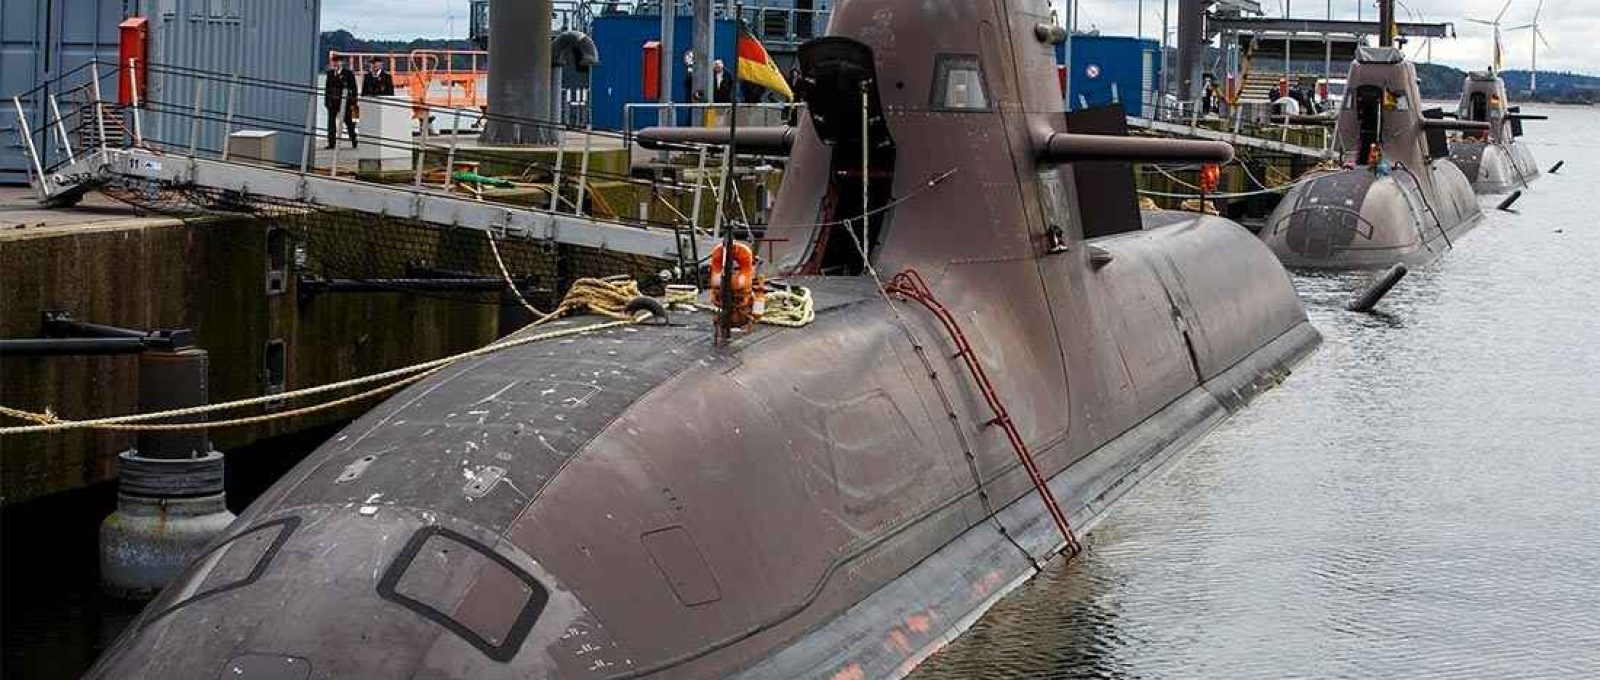 Submarinos U-33, U-34 e U-36 na base da Marinha em Eckernfoerde, Alemanha, em 2016 (Morris MacMatzen/Getty Images).